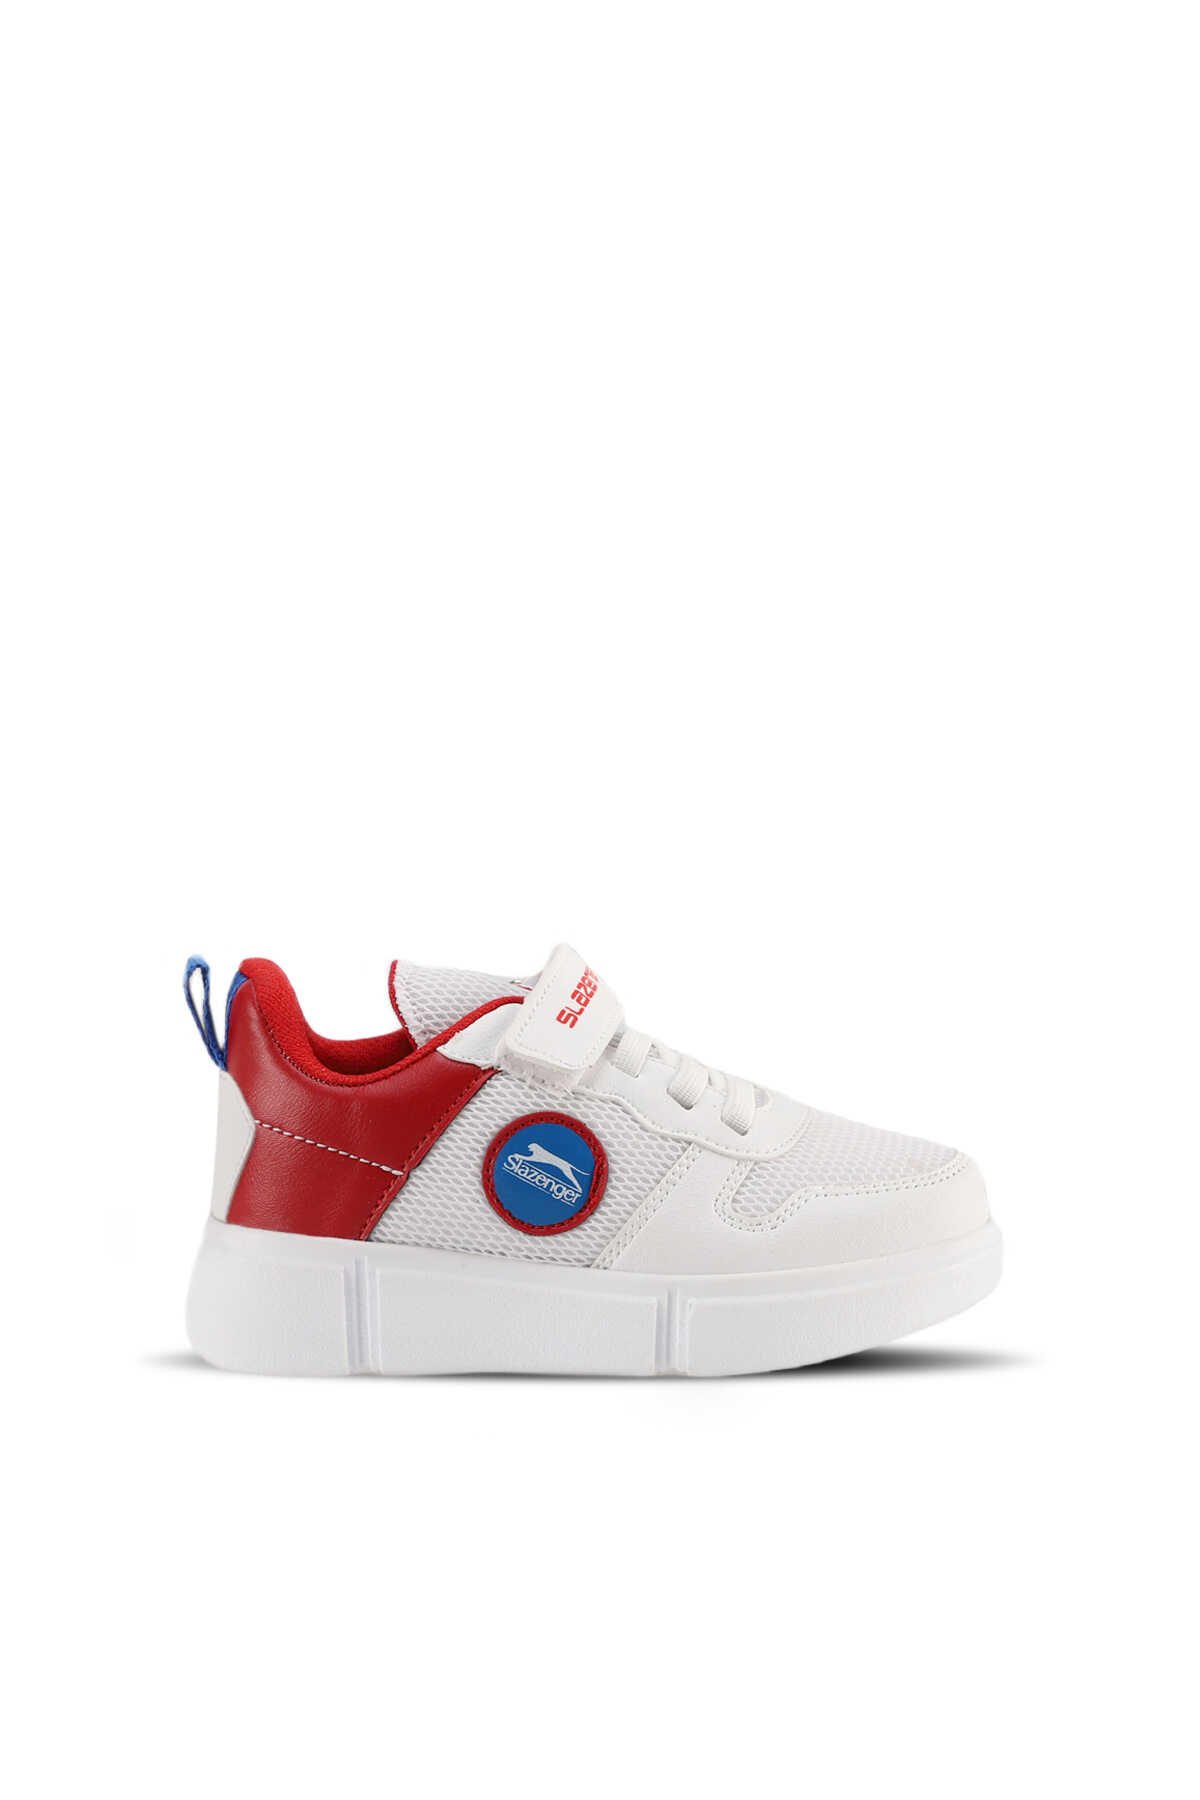 Slazenger - Slazenger KAVITHA KTN Sneaker Kız Çocuk Ayakkabı Beyaz / Kırmızı